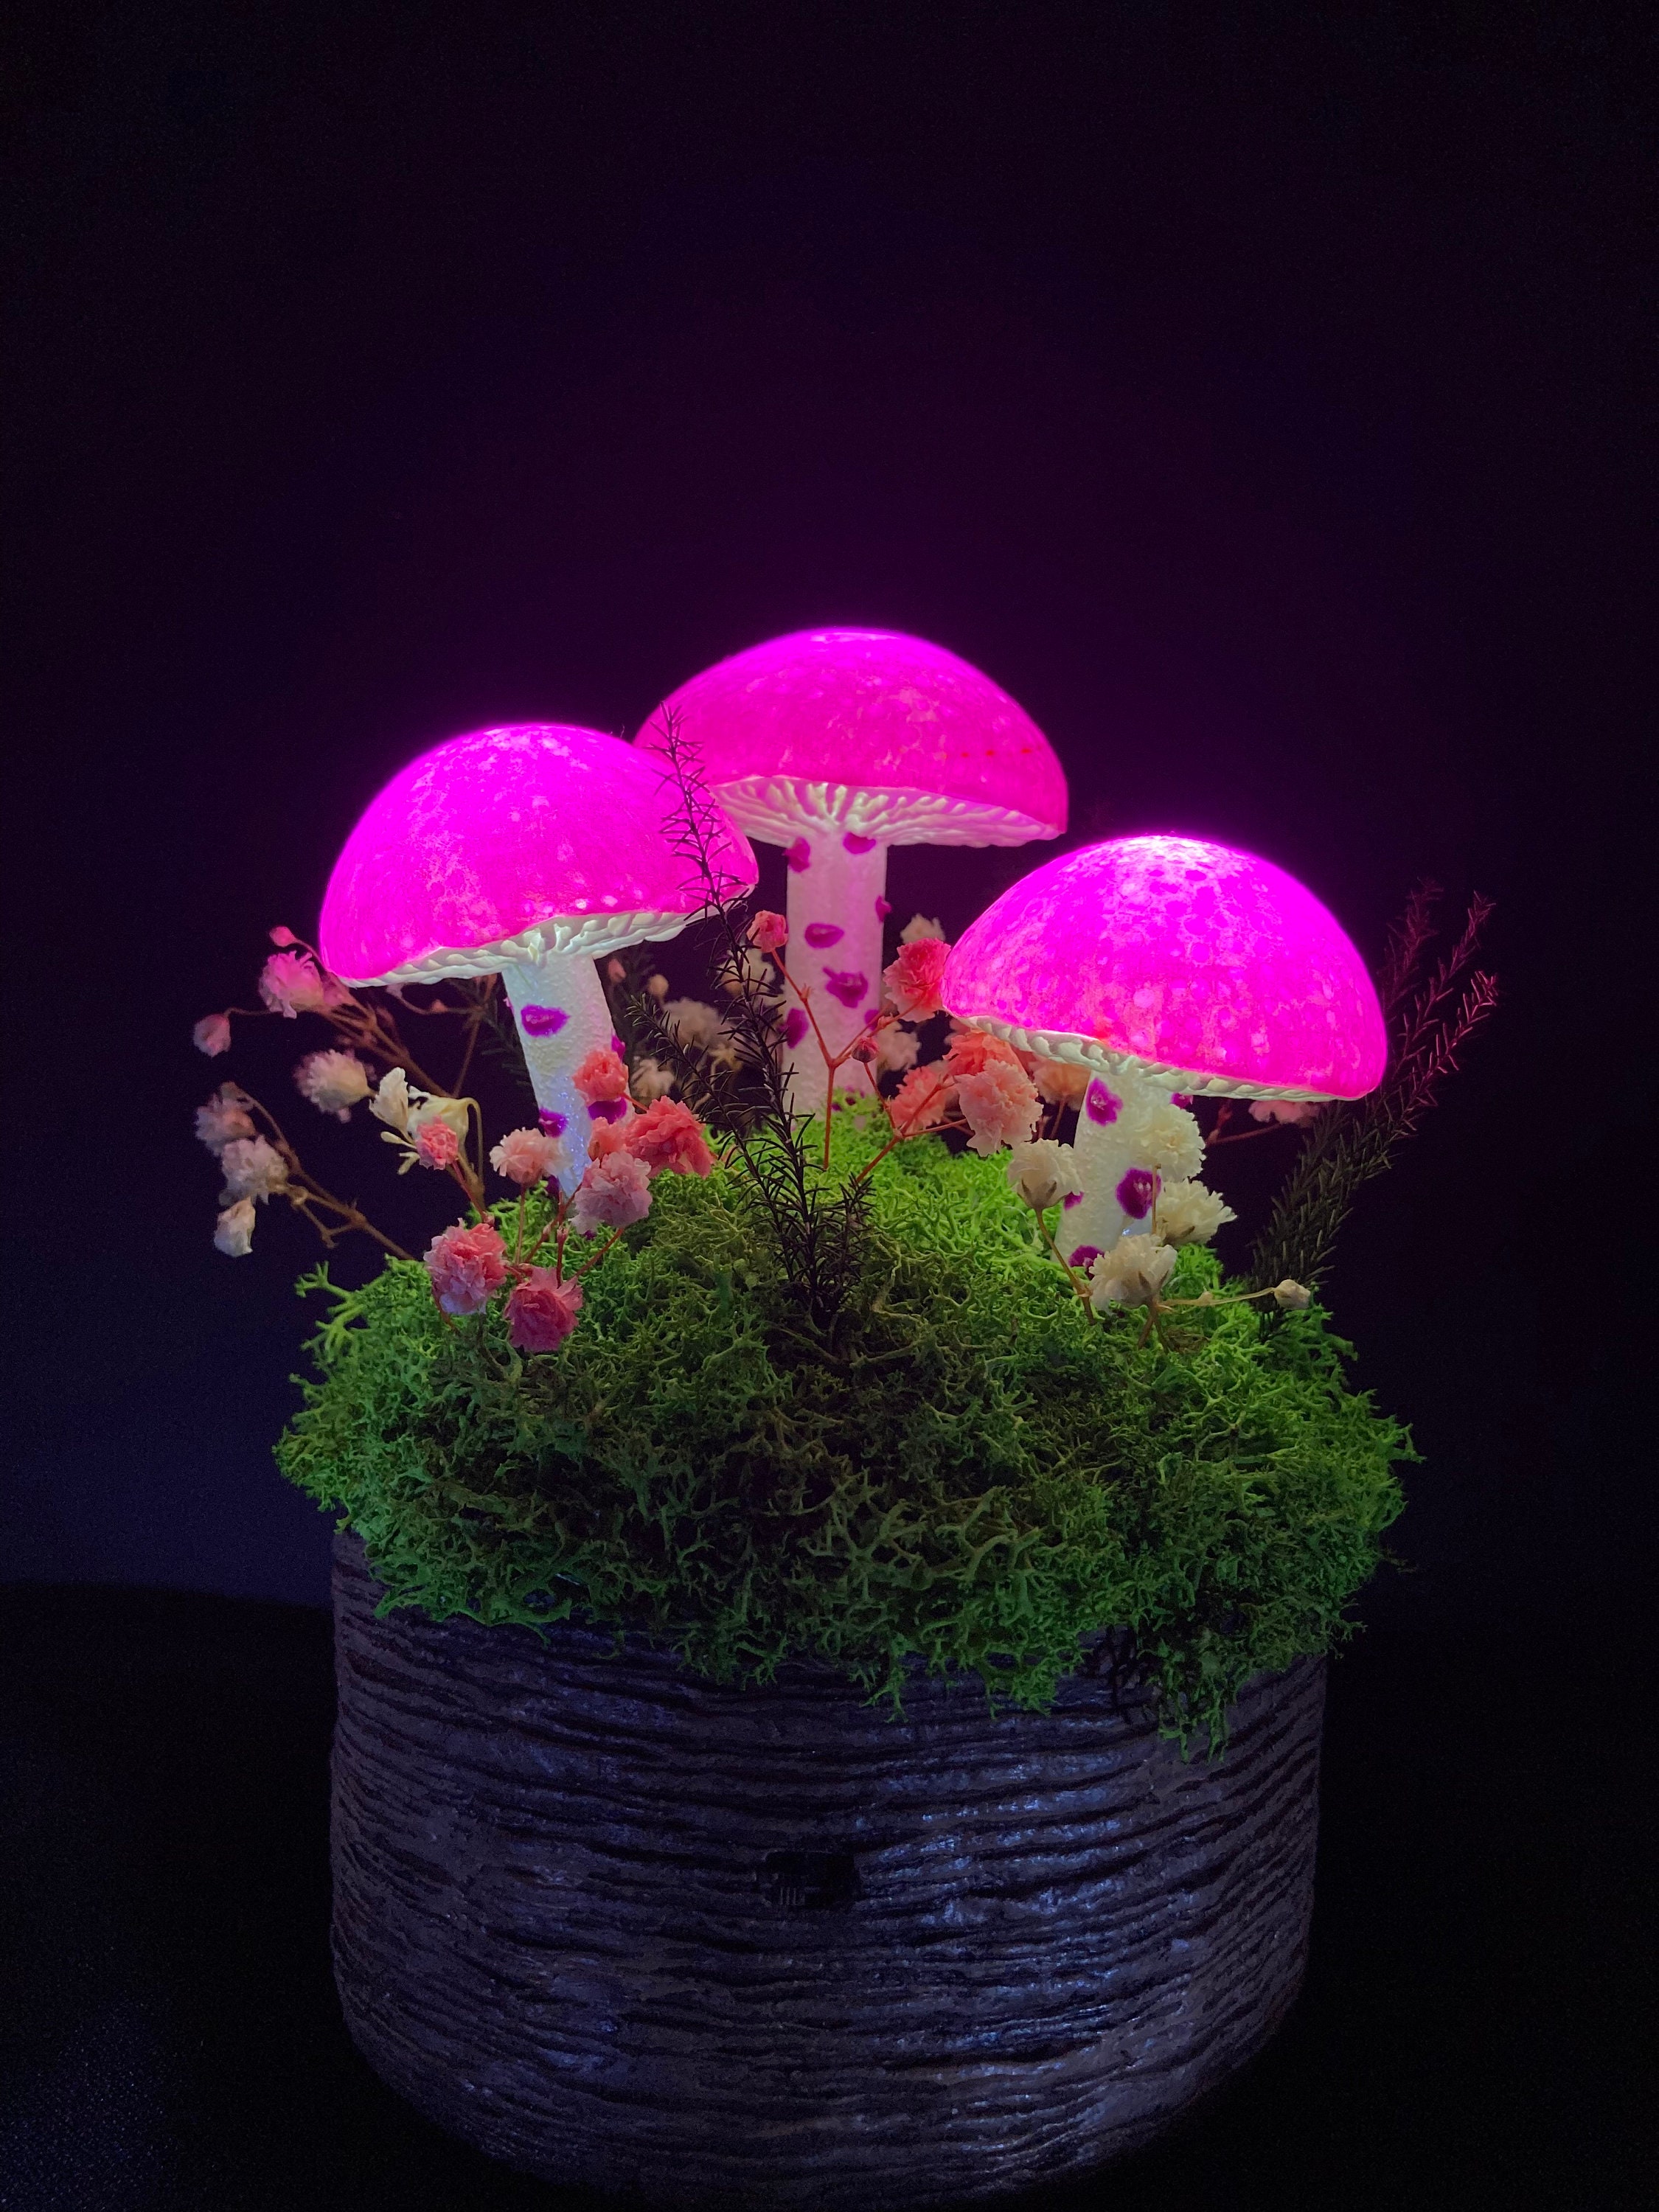 Lampe de table Led - Crystal Rosa 1W avec batterie rechargeable